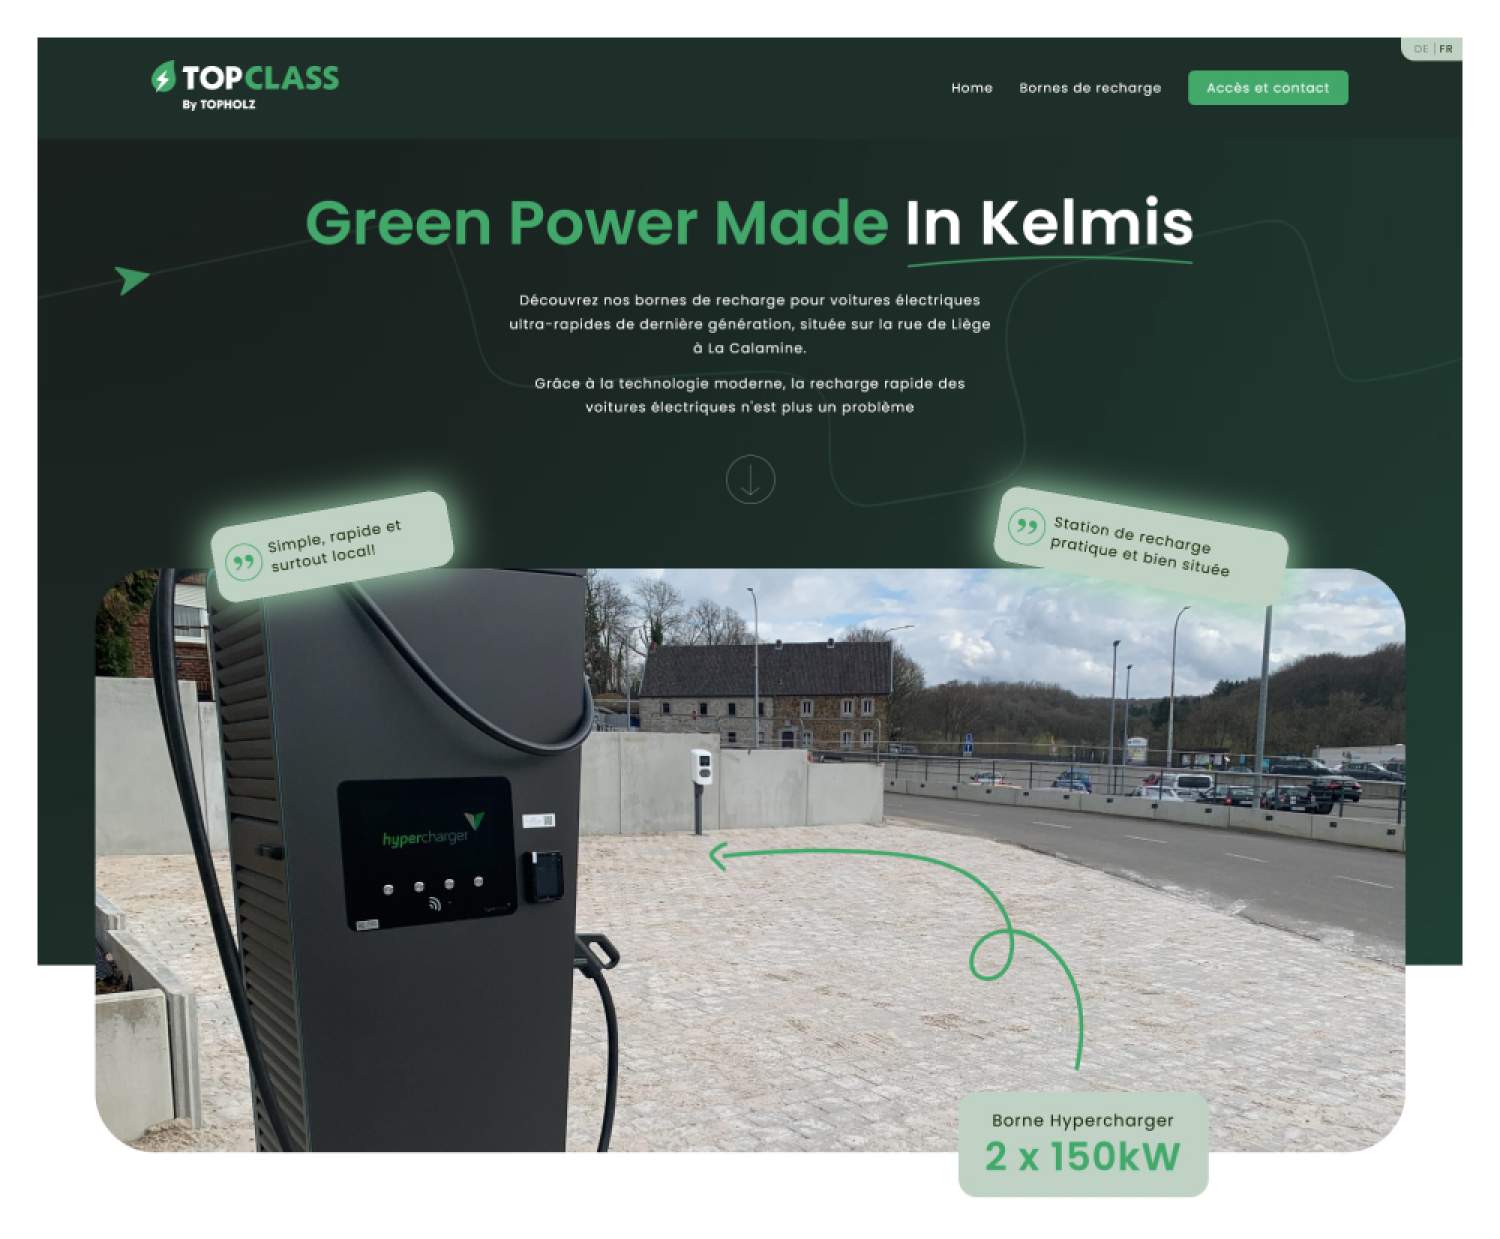 Bornes de recharges avec de l'électricité verte Chaussée de Liège